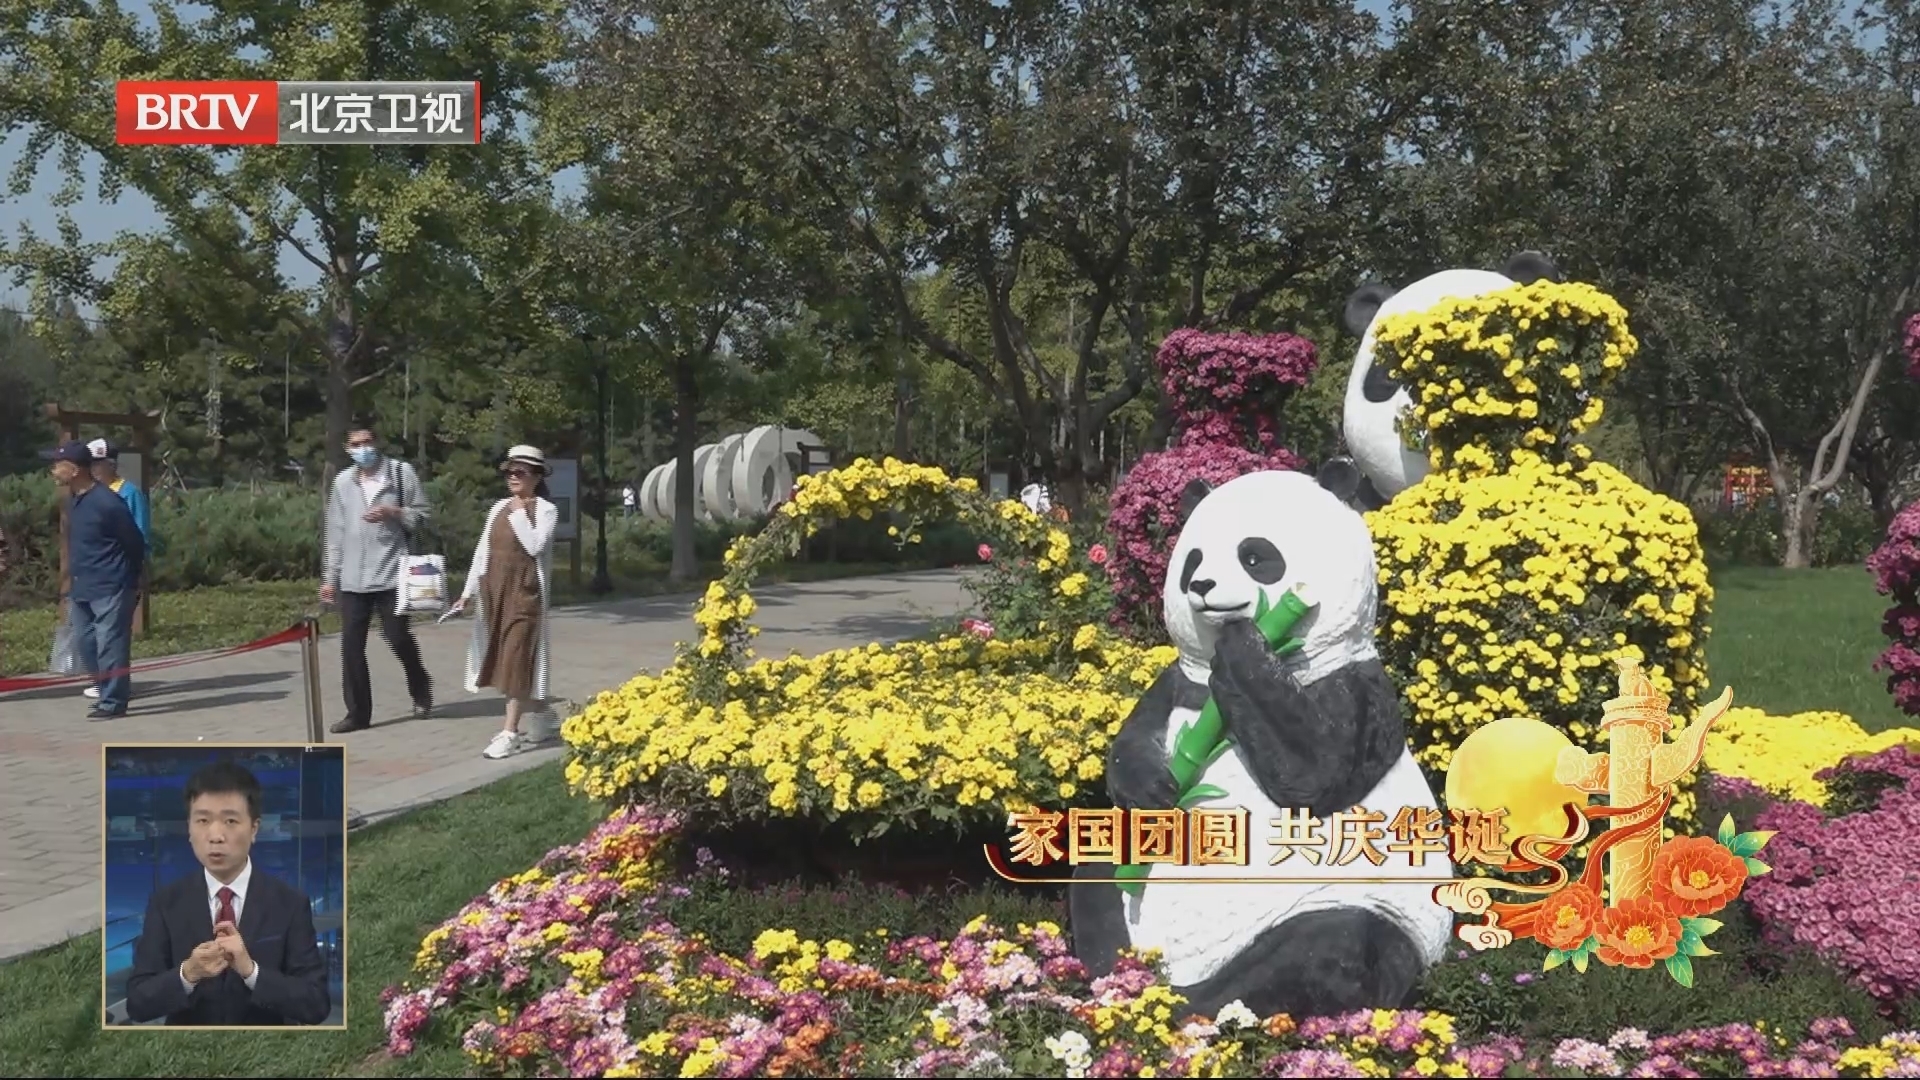 假期前五天京郊公园累计接待游客209万人次 同比增长36%